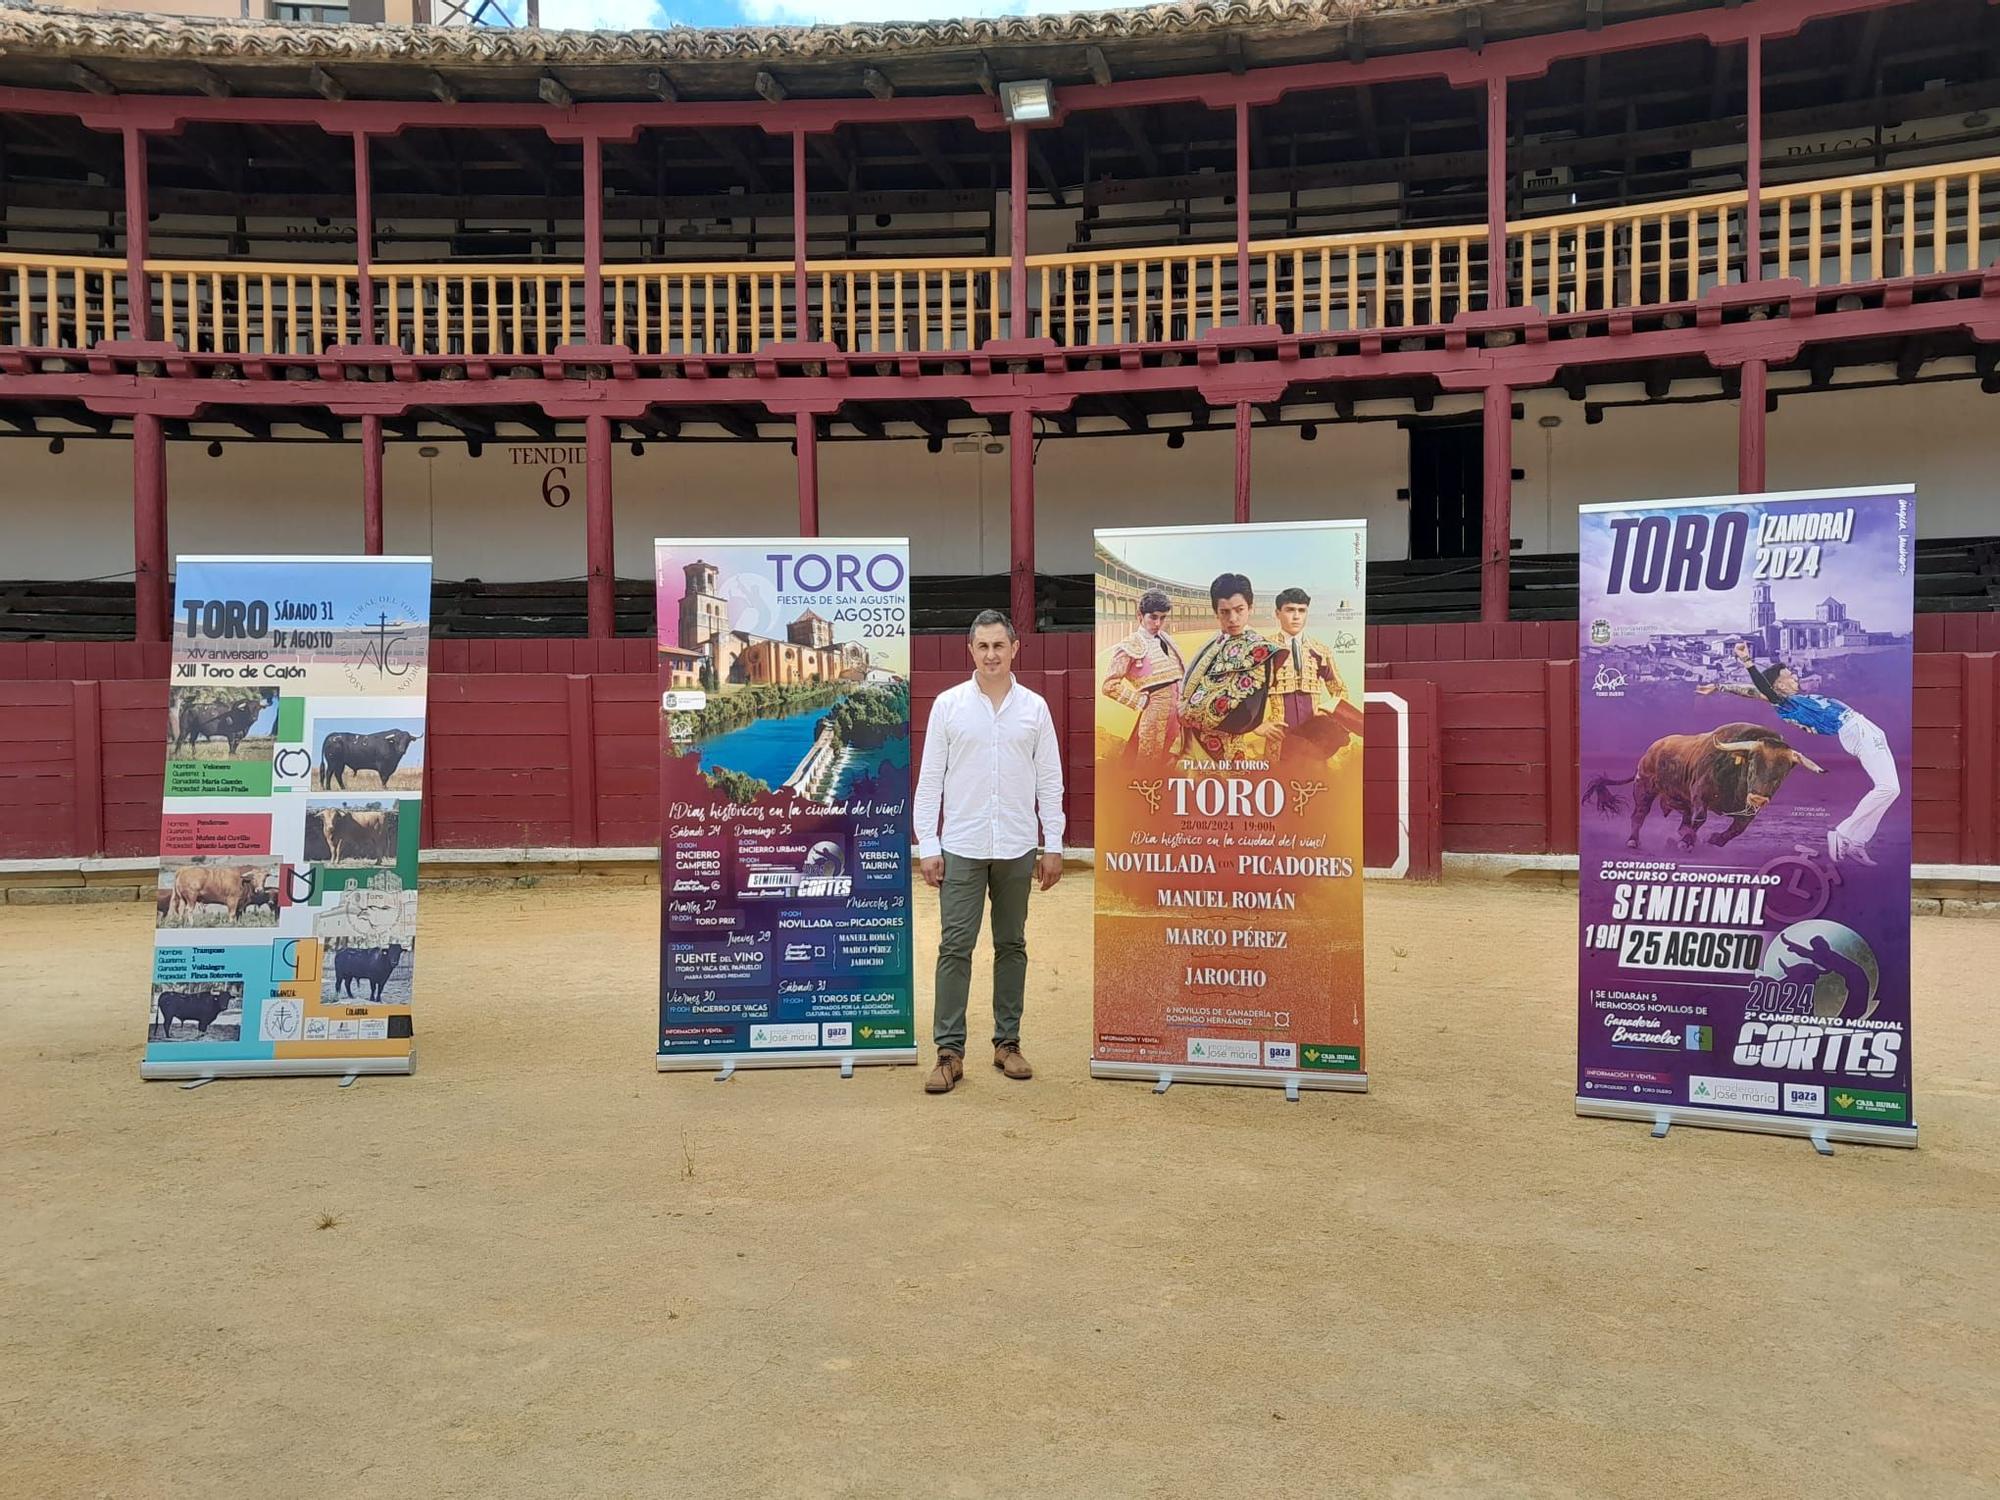 El empresario Daniel Lozano posa junto a los carteles de los festejos confeccionados para la feria taurina de Toro.